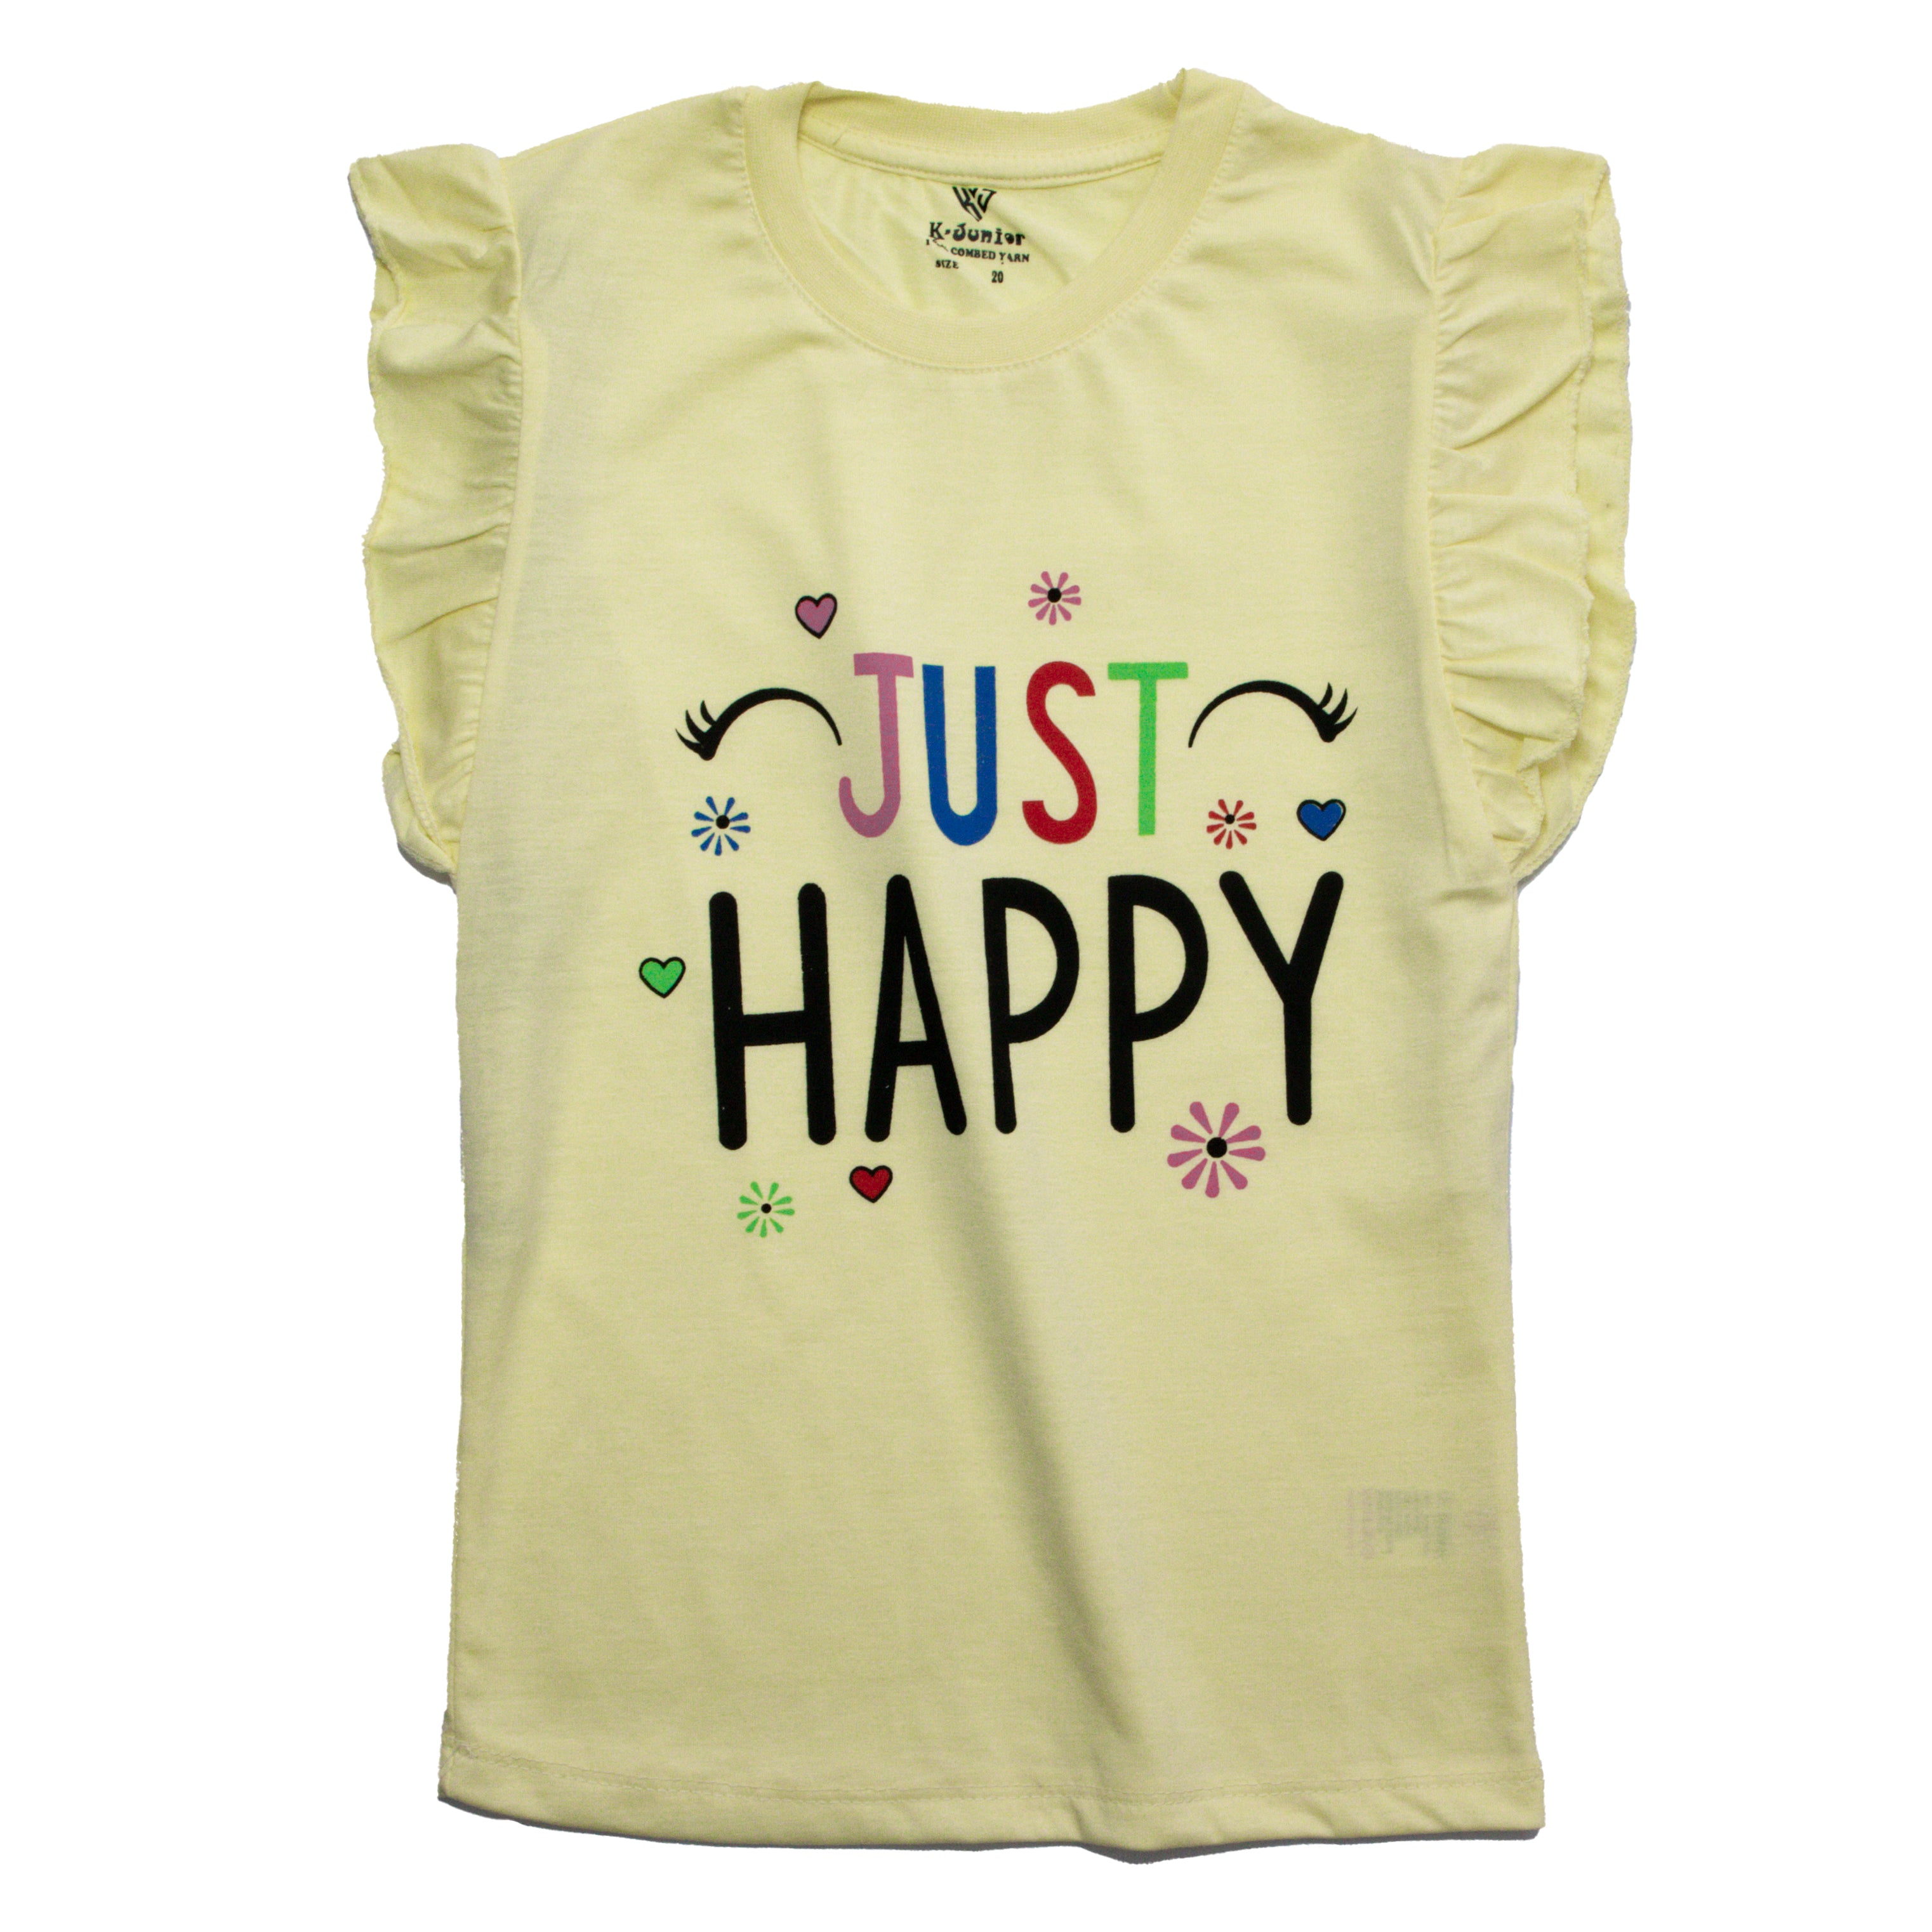 Girls H/S t shirt code - (happy)